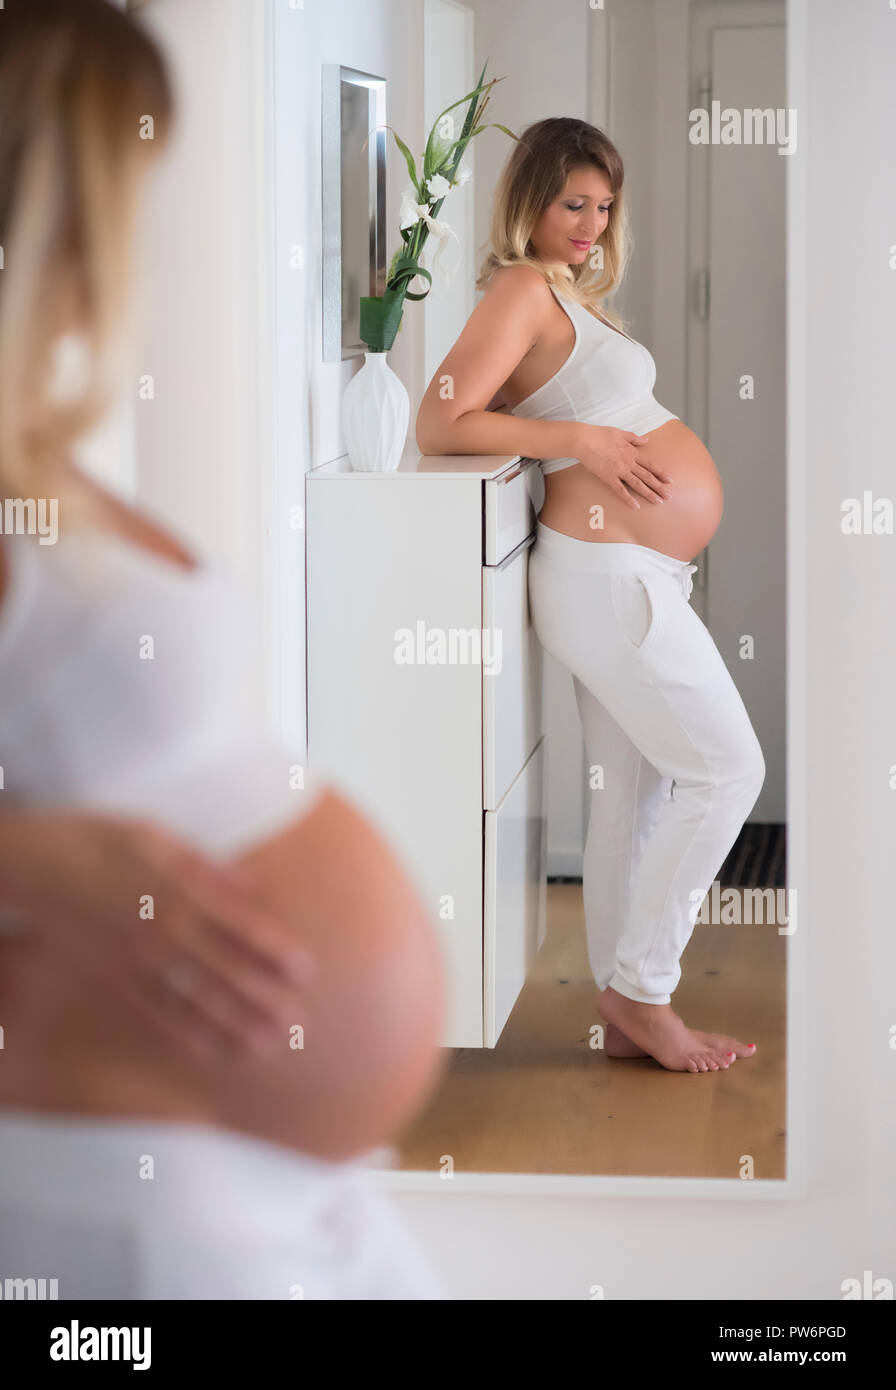 Femme dans son neuvième mois de grossesse, se regarde dans le miroir, Allemagne Banque D'Images